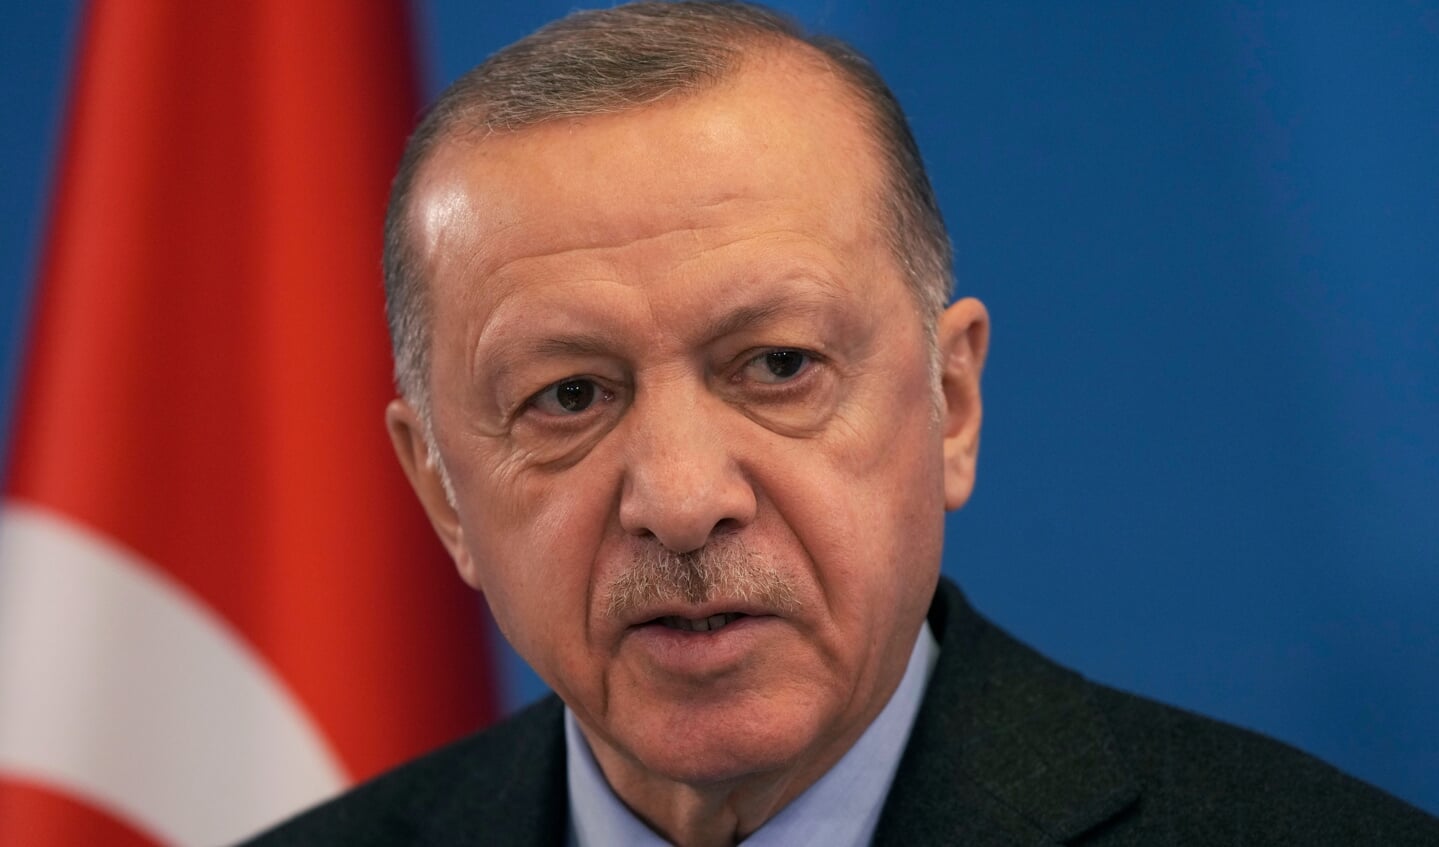 Den tyrkiske regering med Recep Tayyip Erdogan i spidsen kræver, at Sverige og Finland udleverer 30 personer, der af Tyrkiet beskrives som værende terrorister. Foto: 